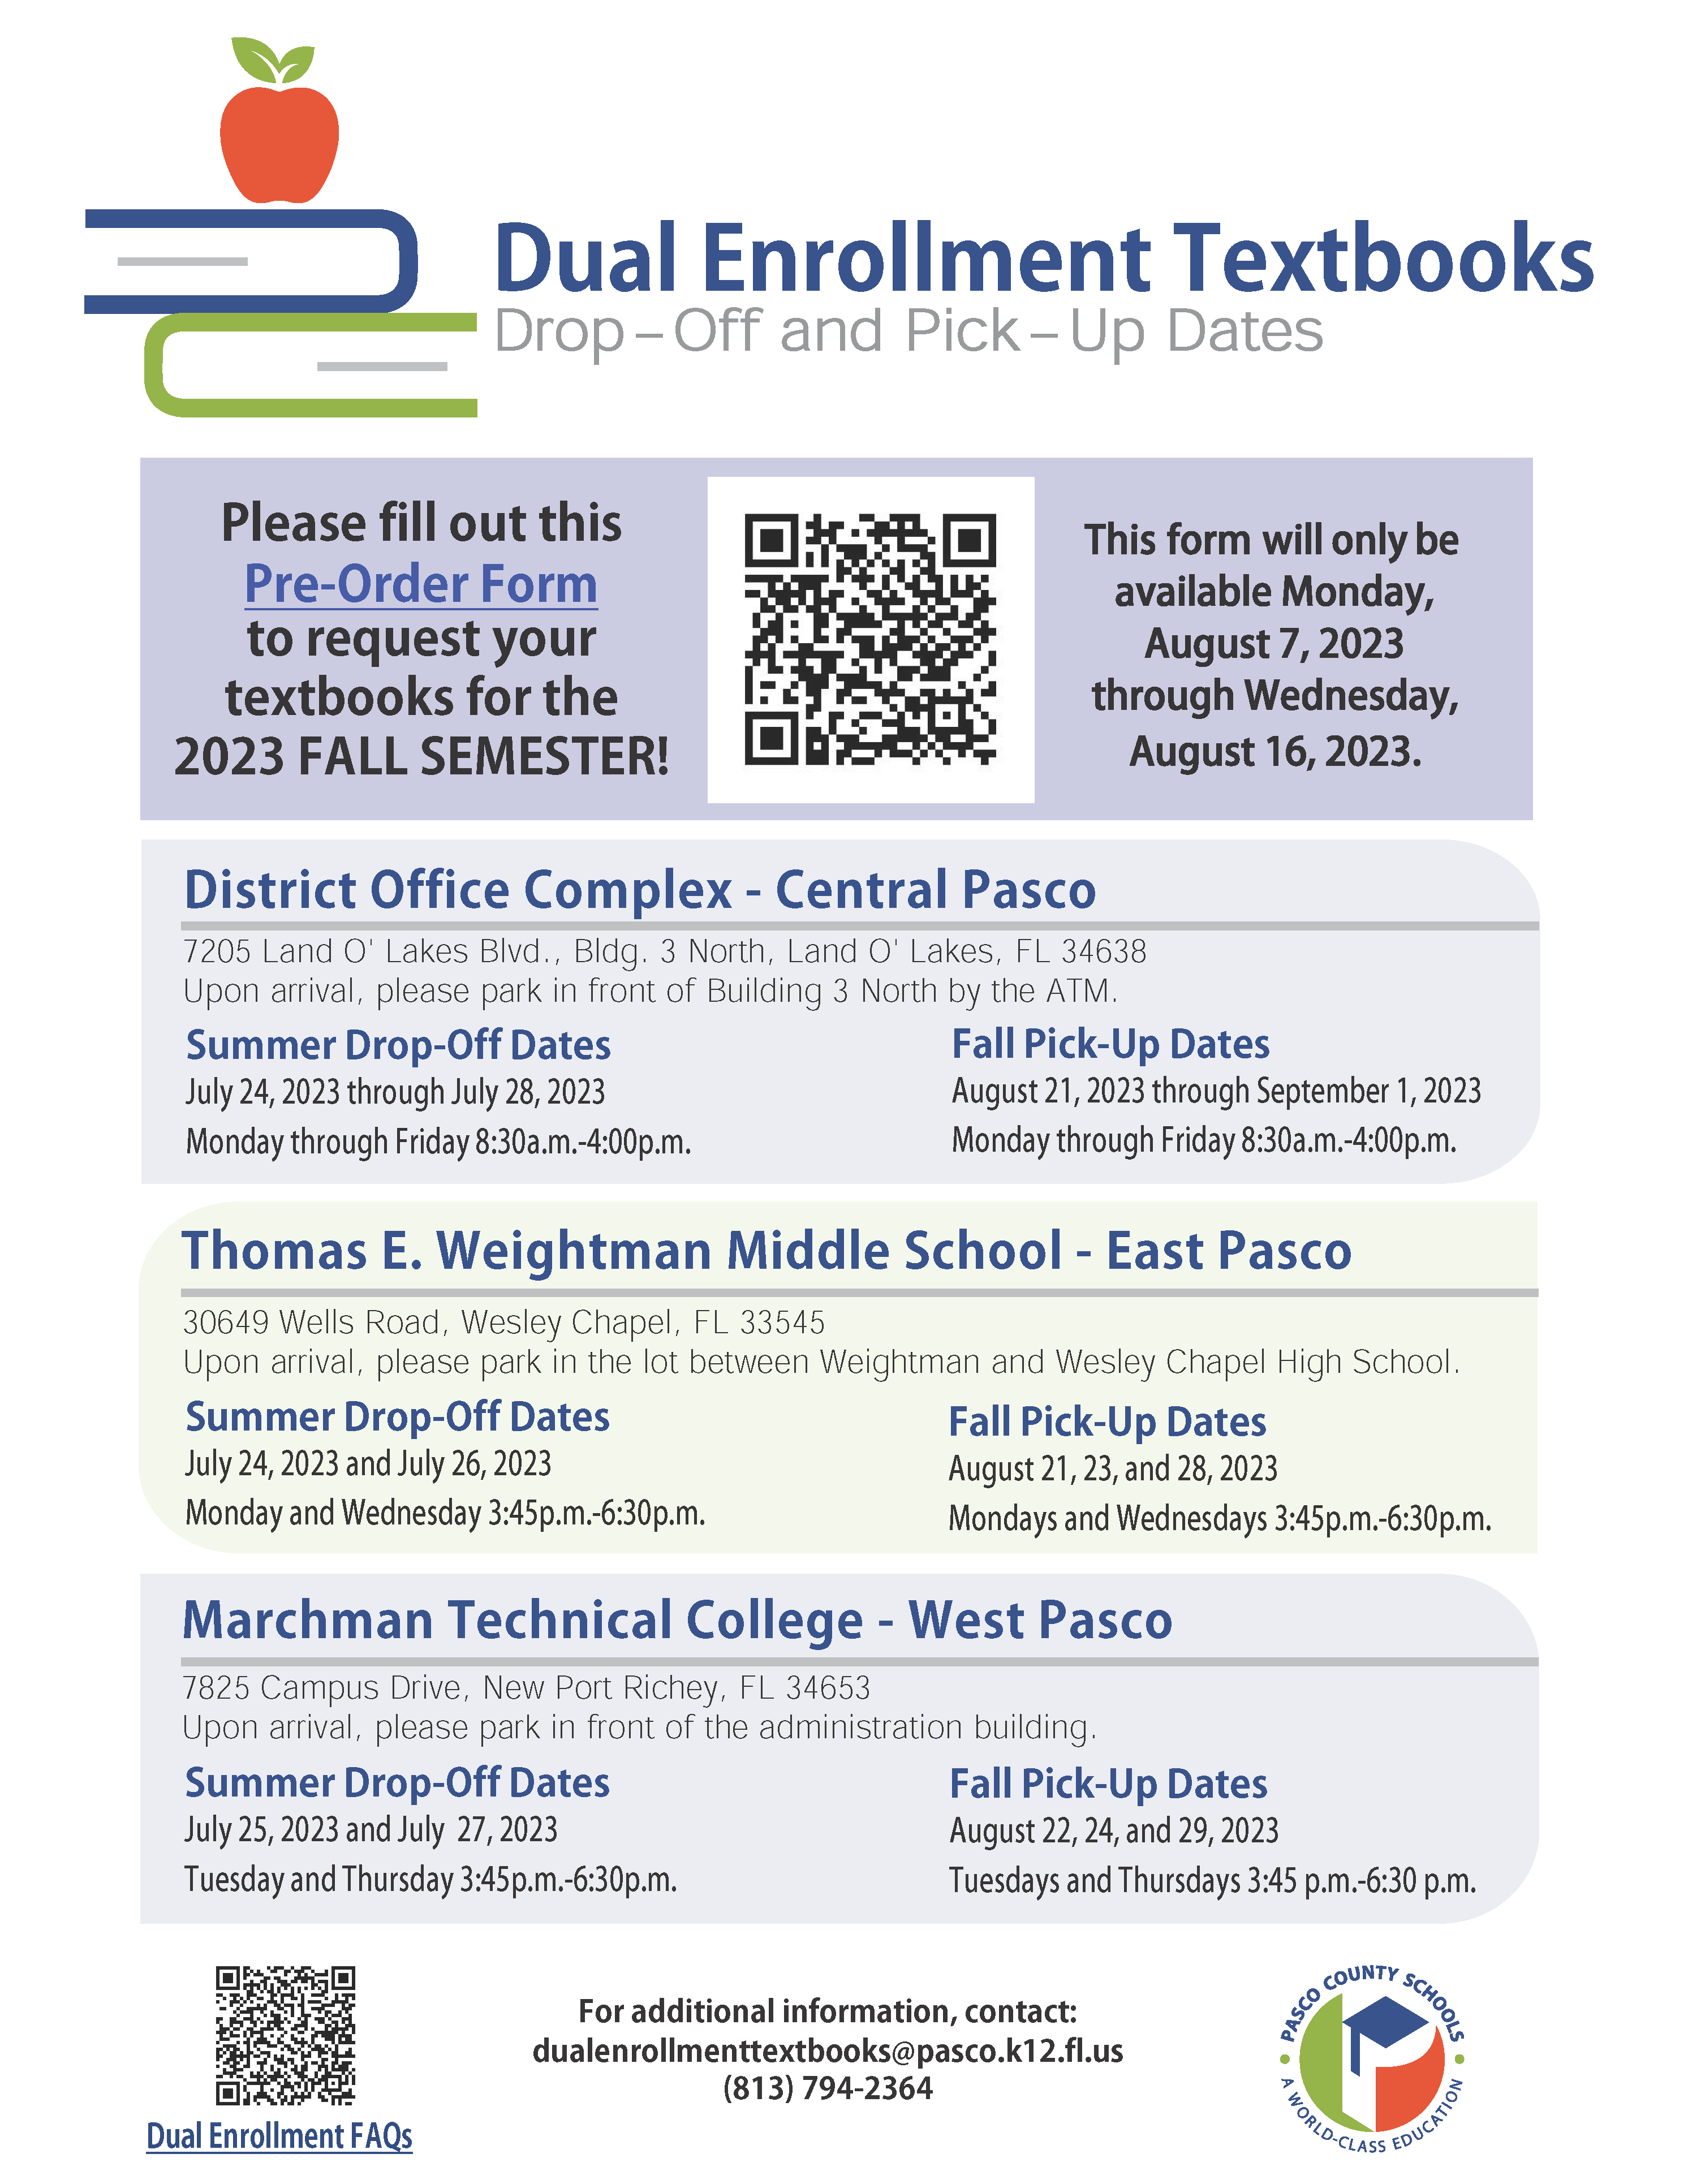 Dual Enrollment Flyer